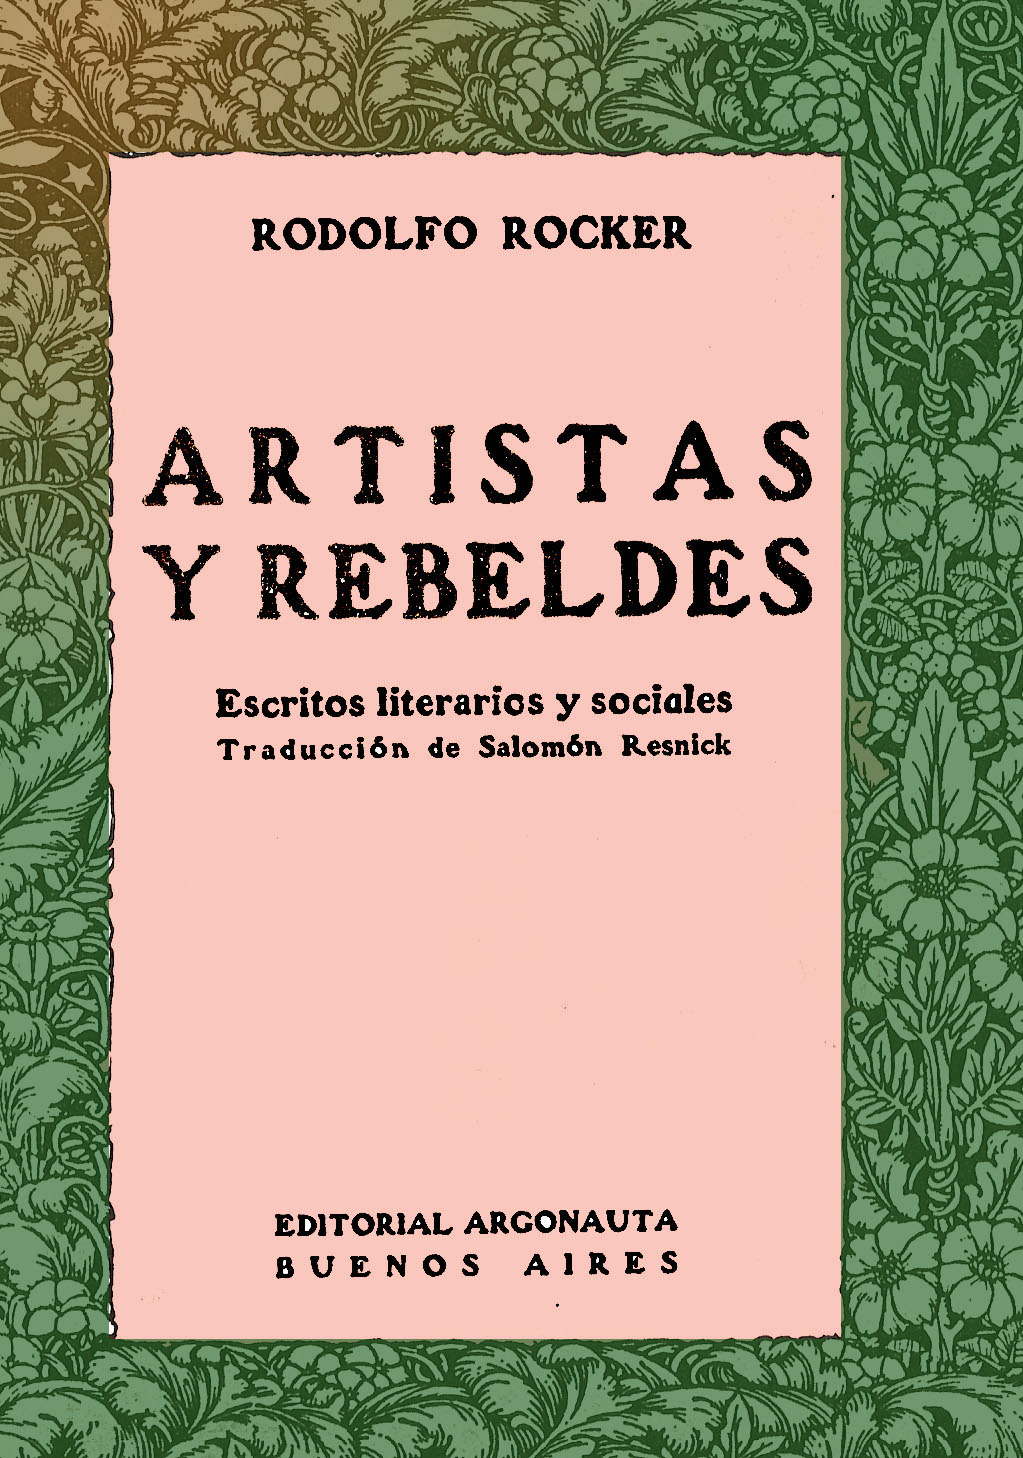 [RODOLFO+ROCKER+PORTADA.jpg]